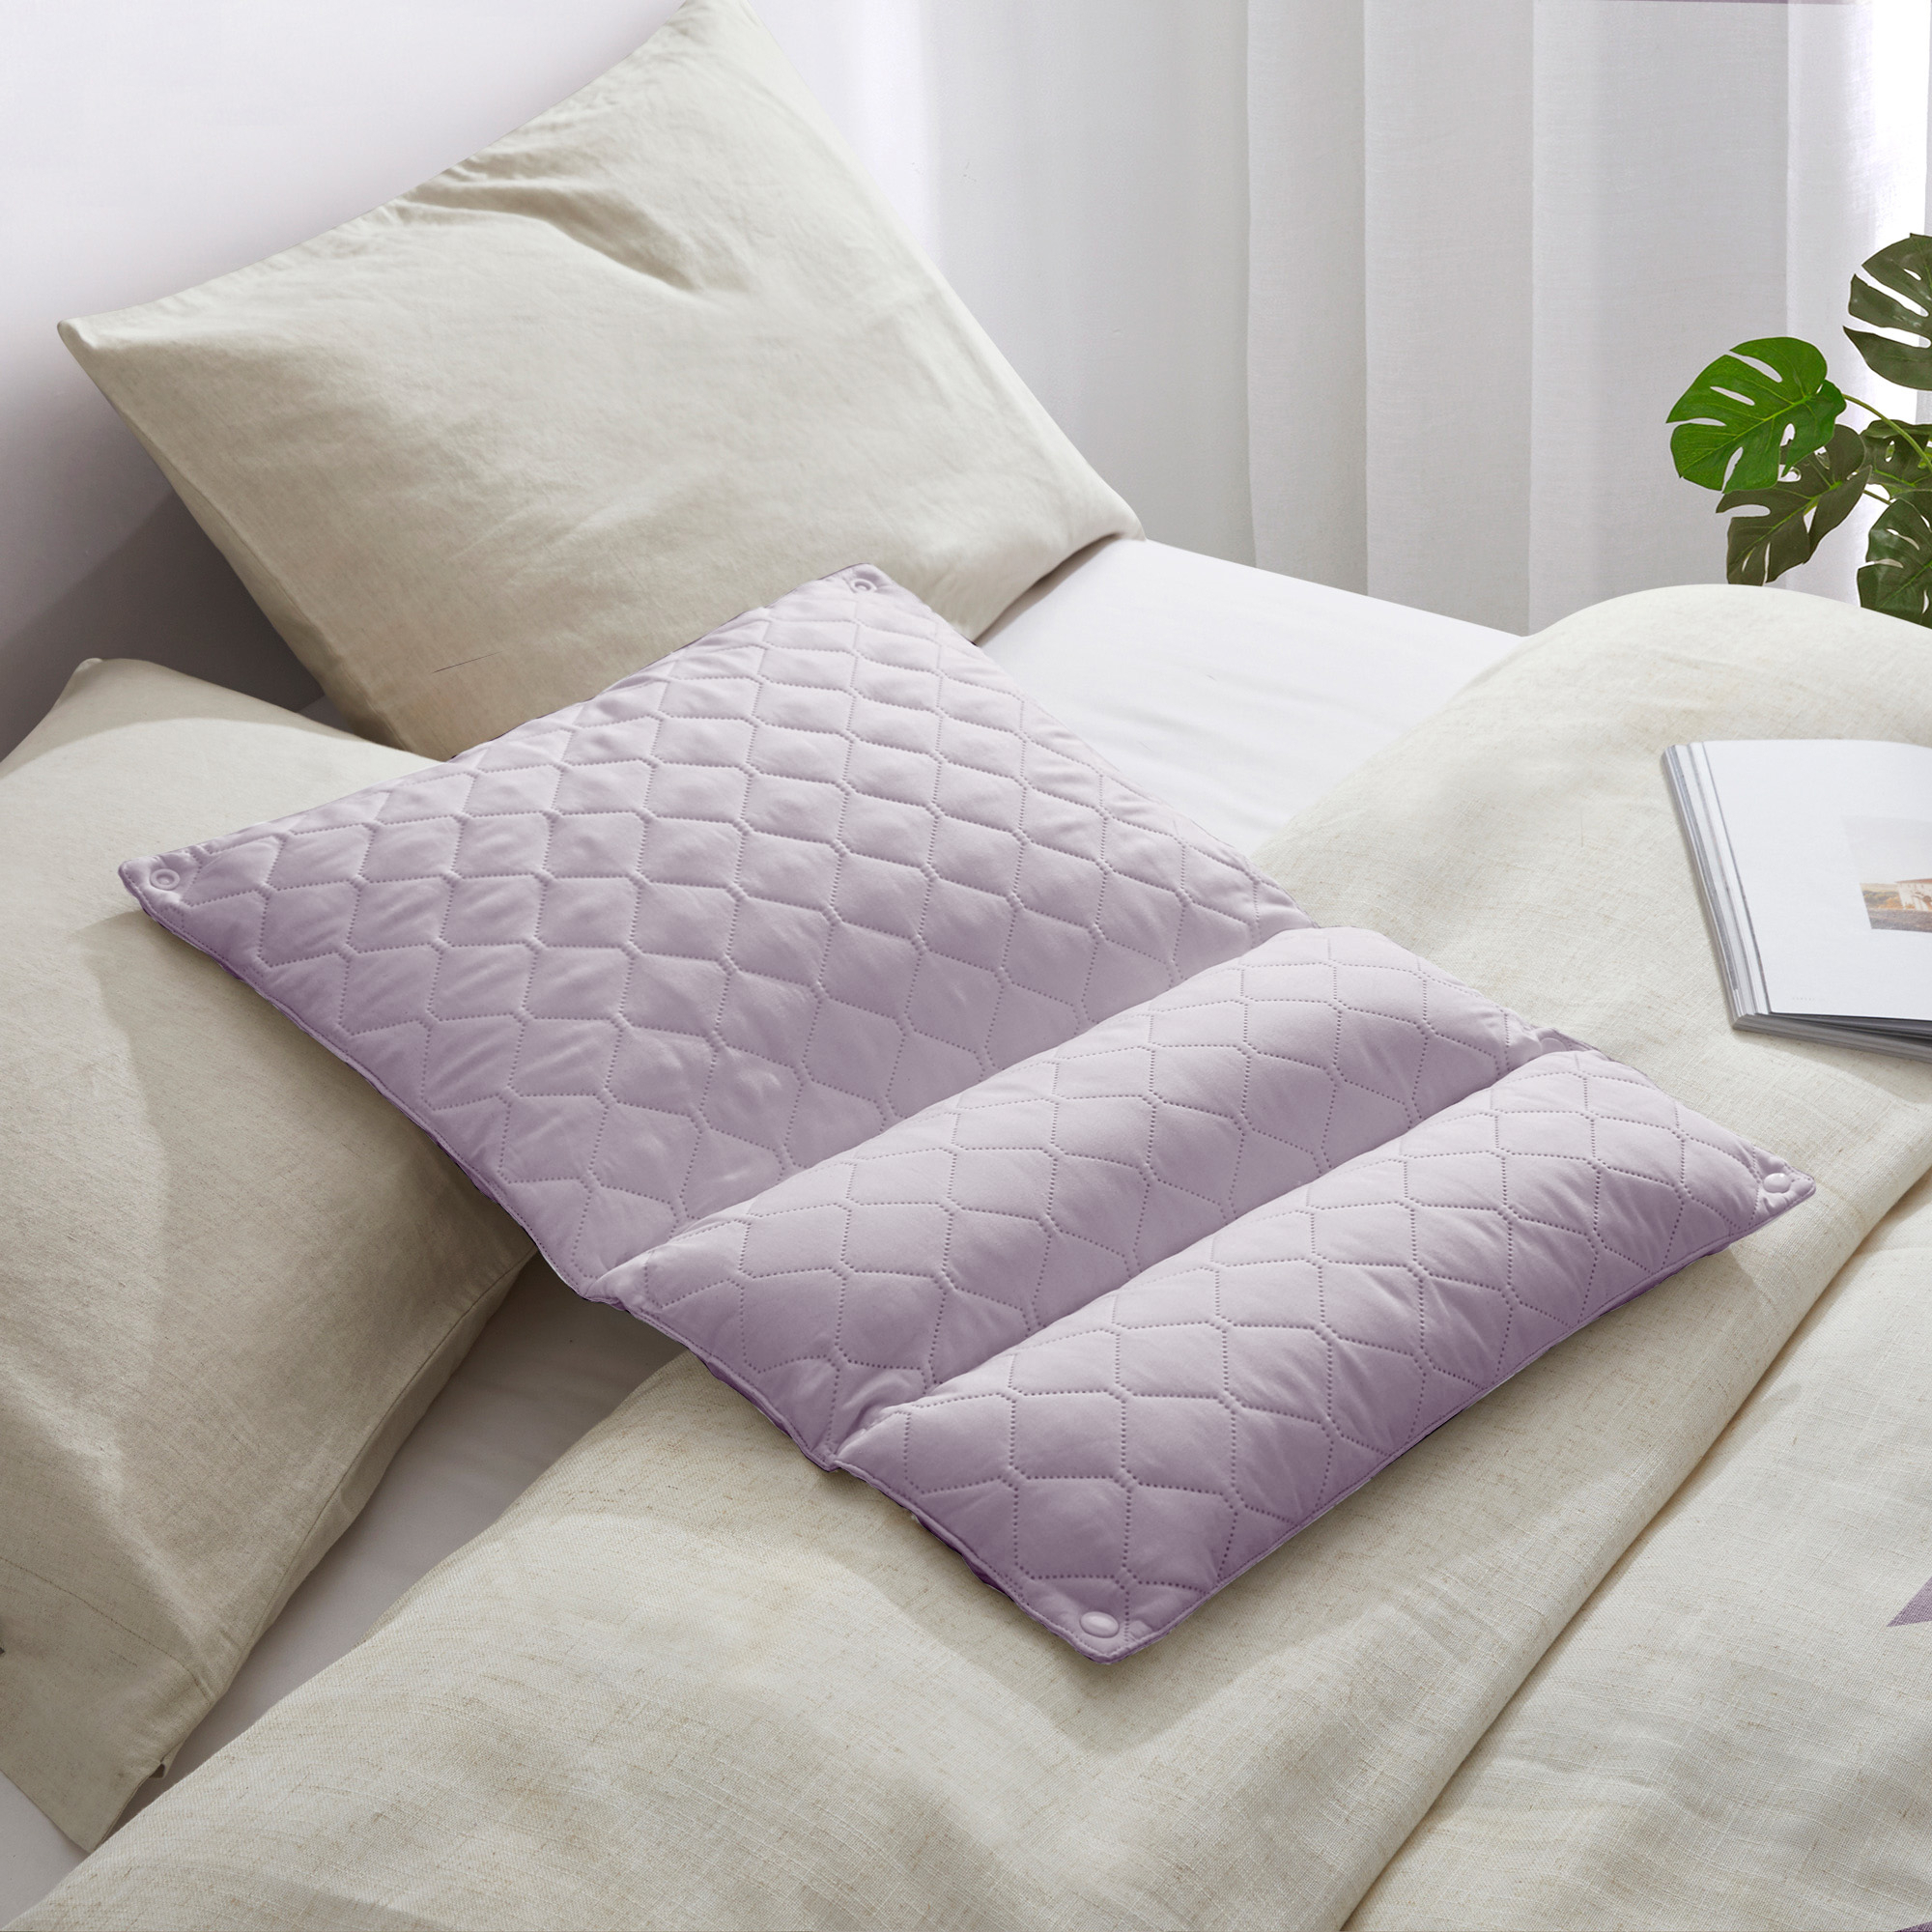 Adjustable Folding Polyester Pillow - Light Gray, Standard/Queen